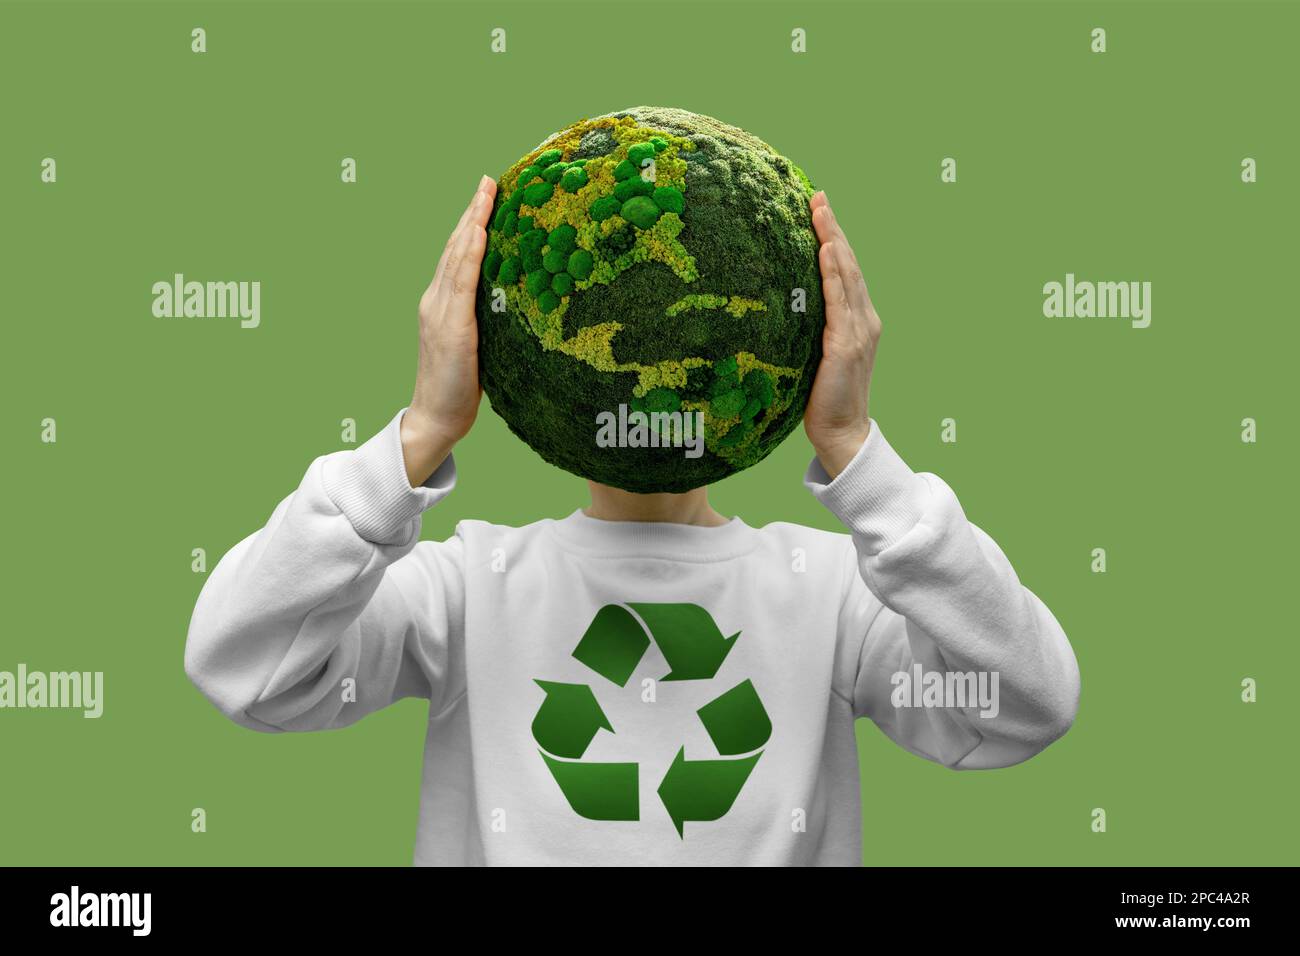 Eine Frau hält einen grünen Planeten Erde mit Recycling-Symbol Stockfoto